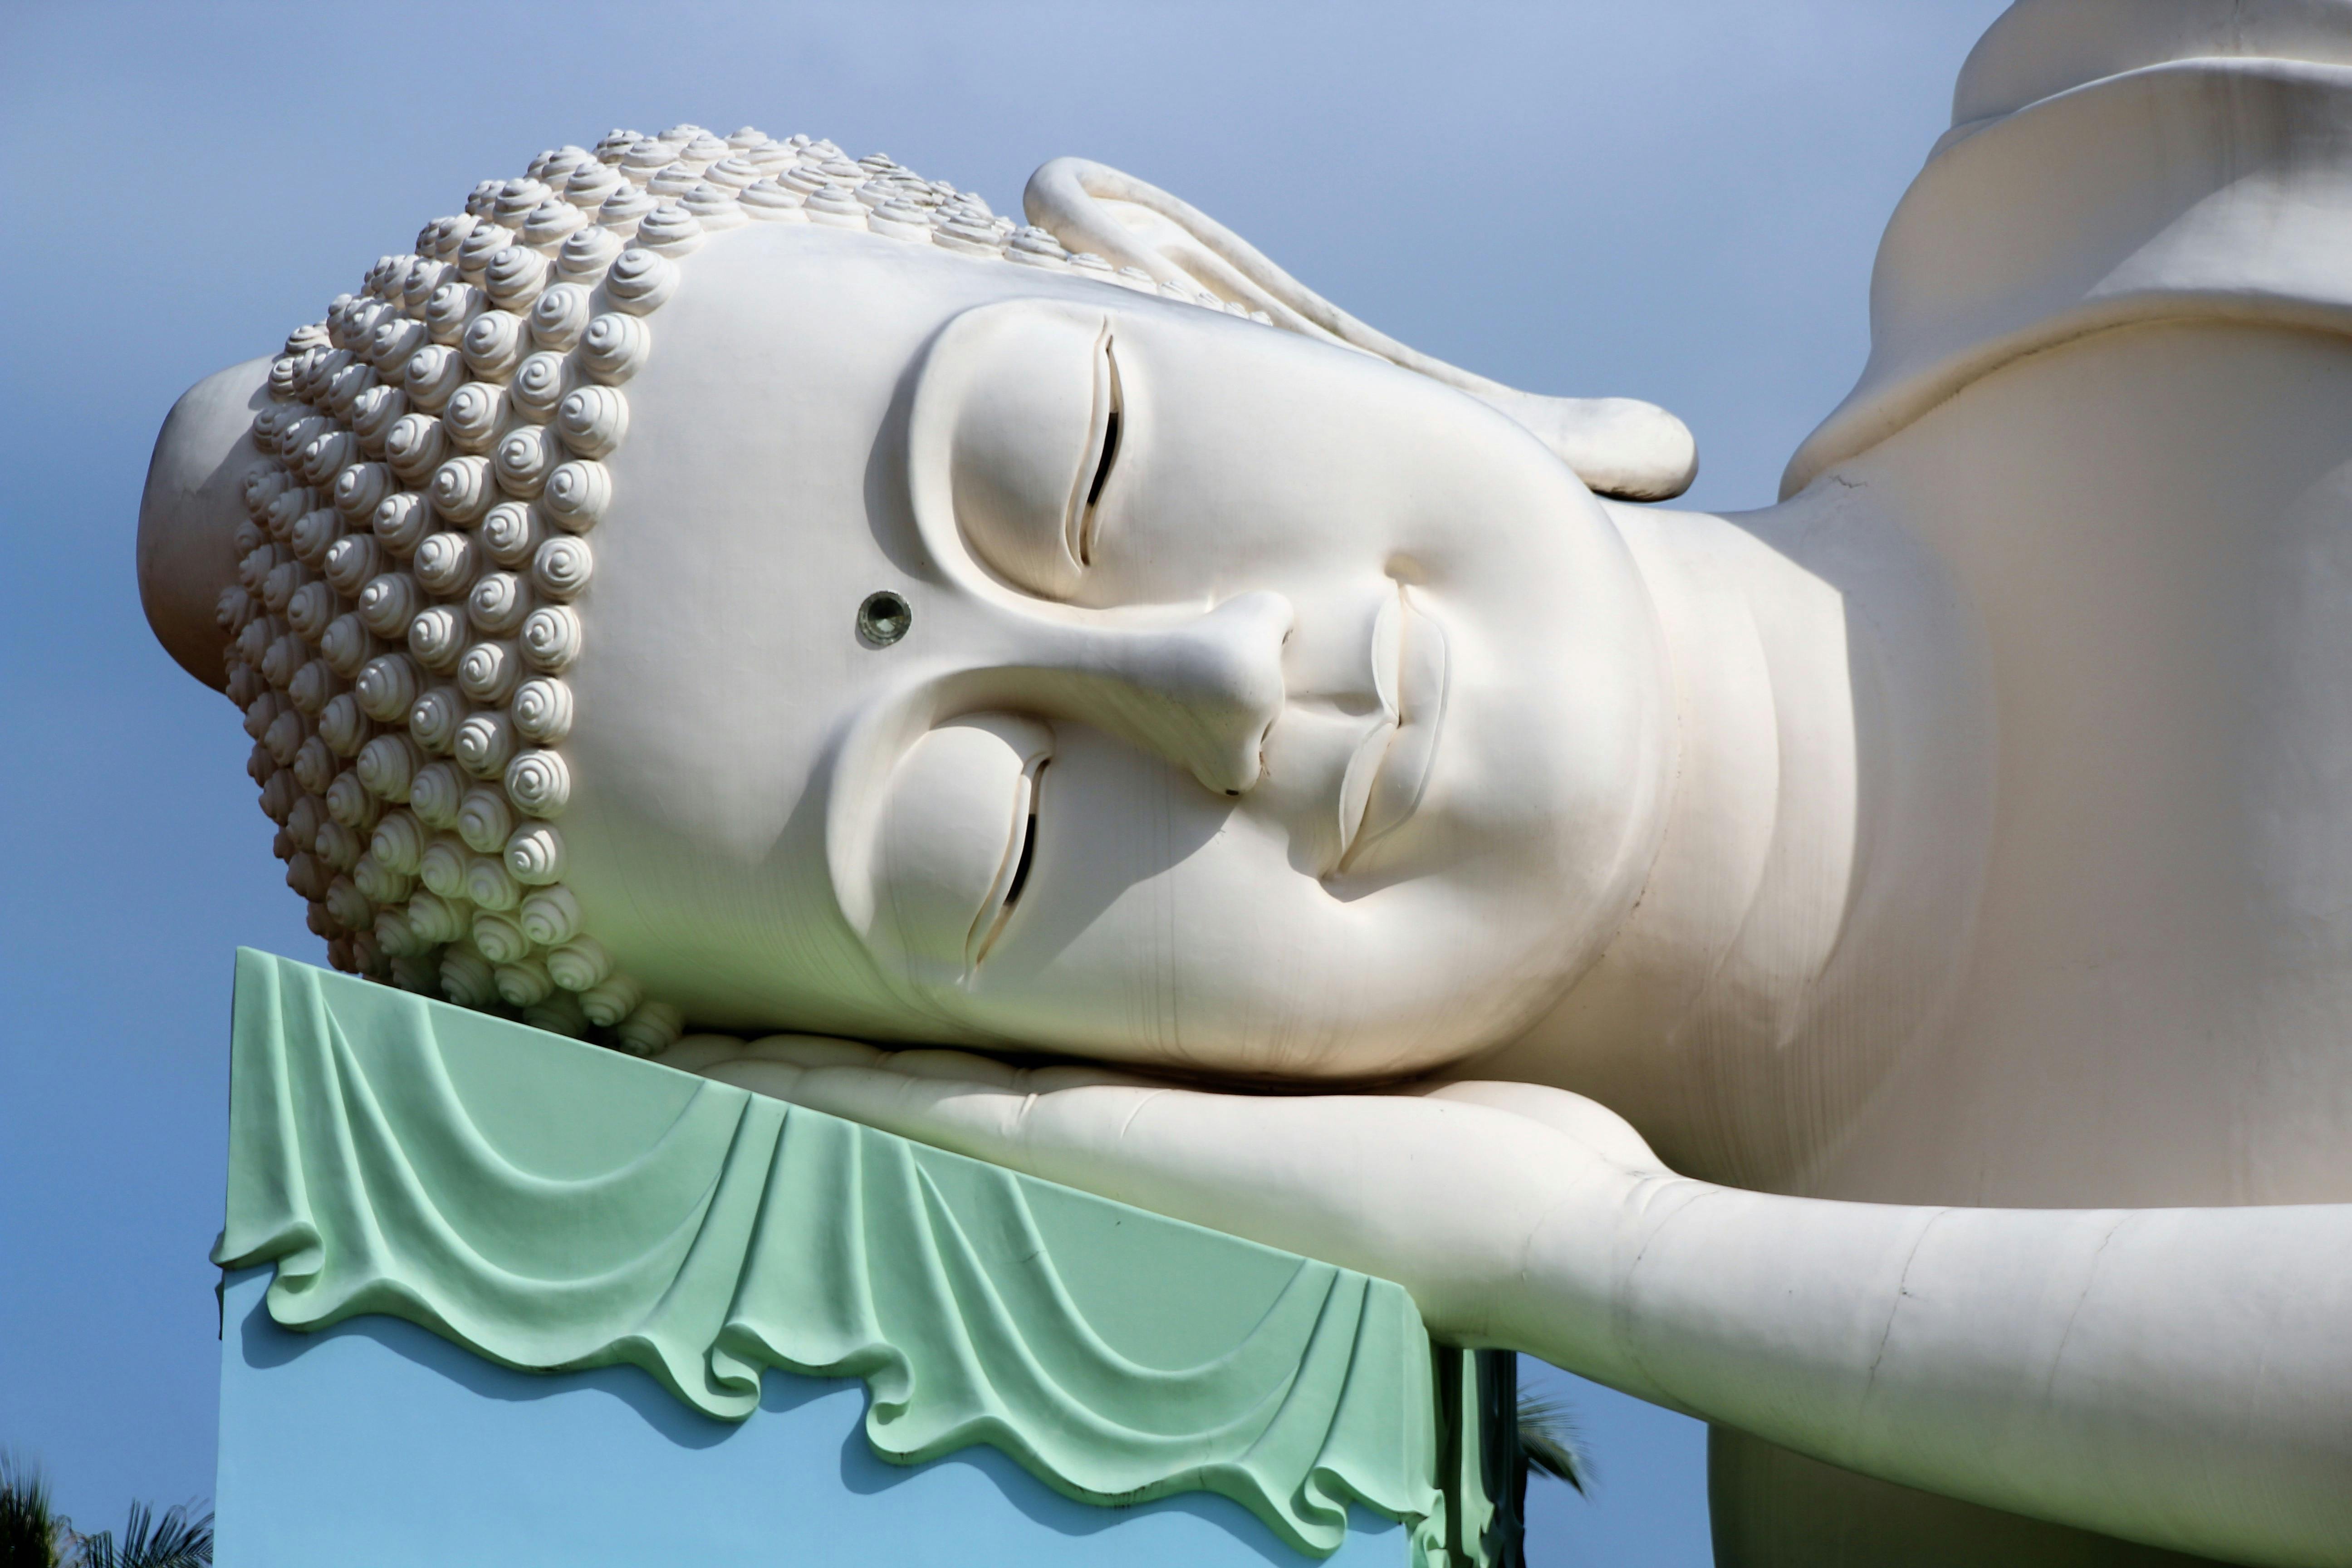 50+ Free Reclining Buddha & Buddha Images - Pixabay